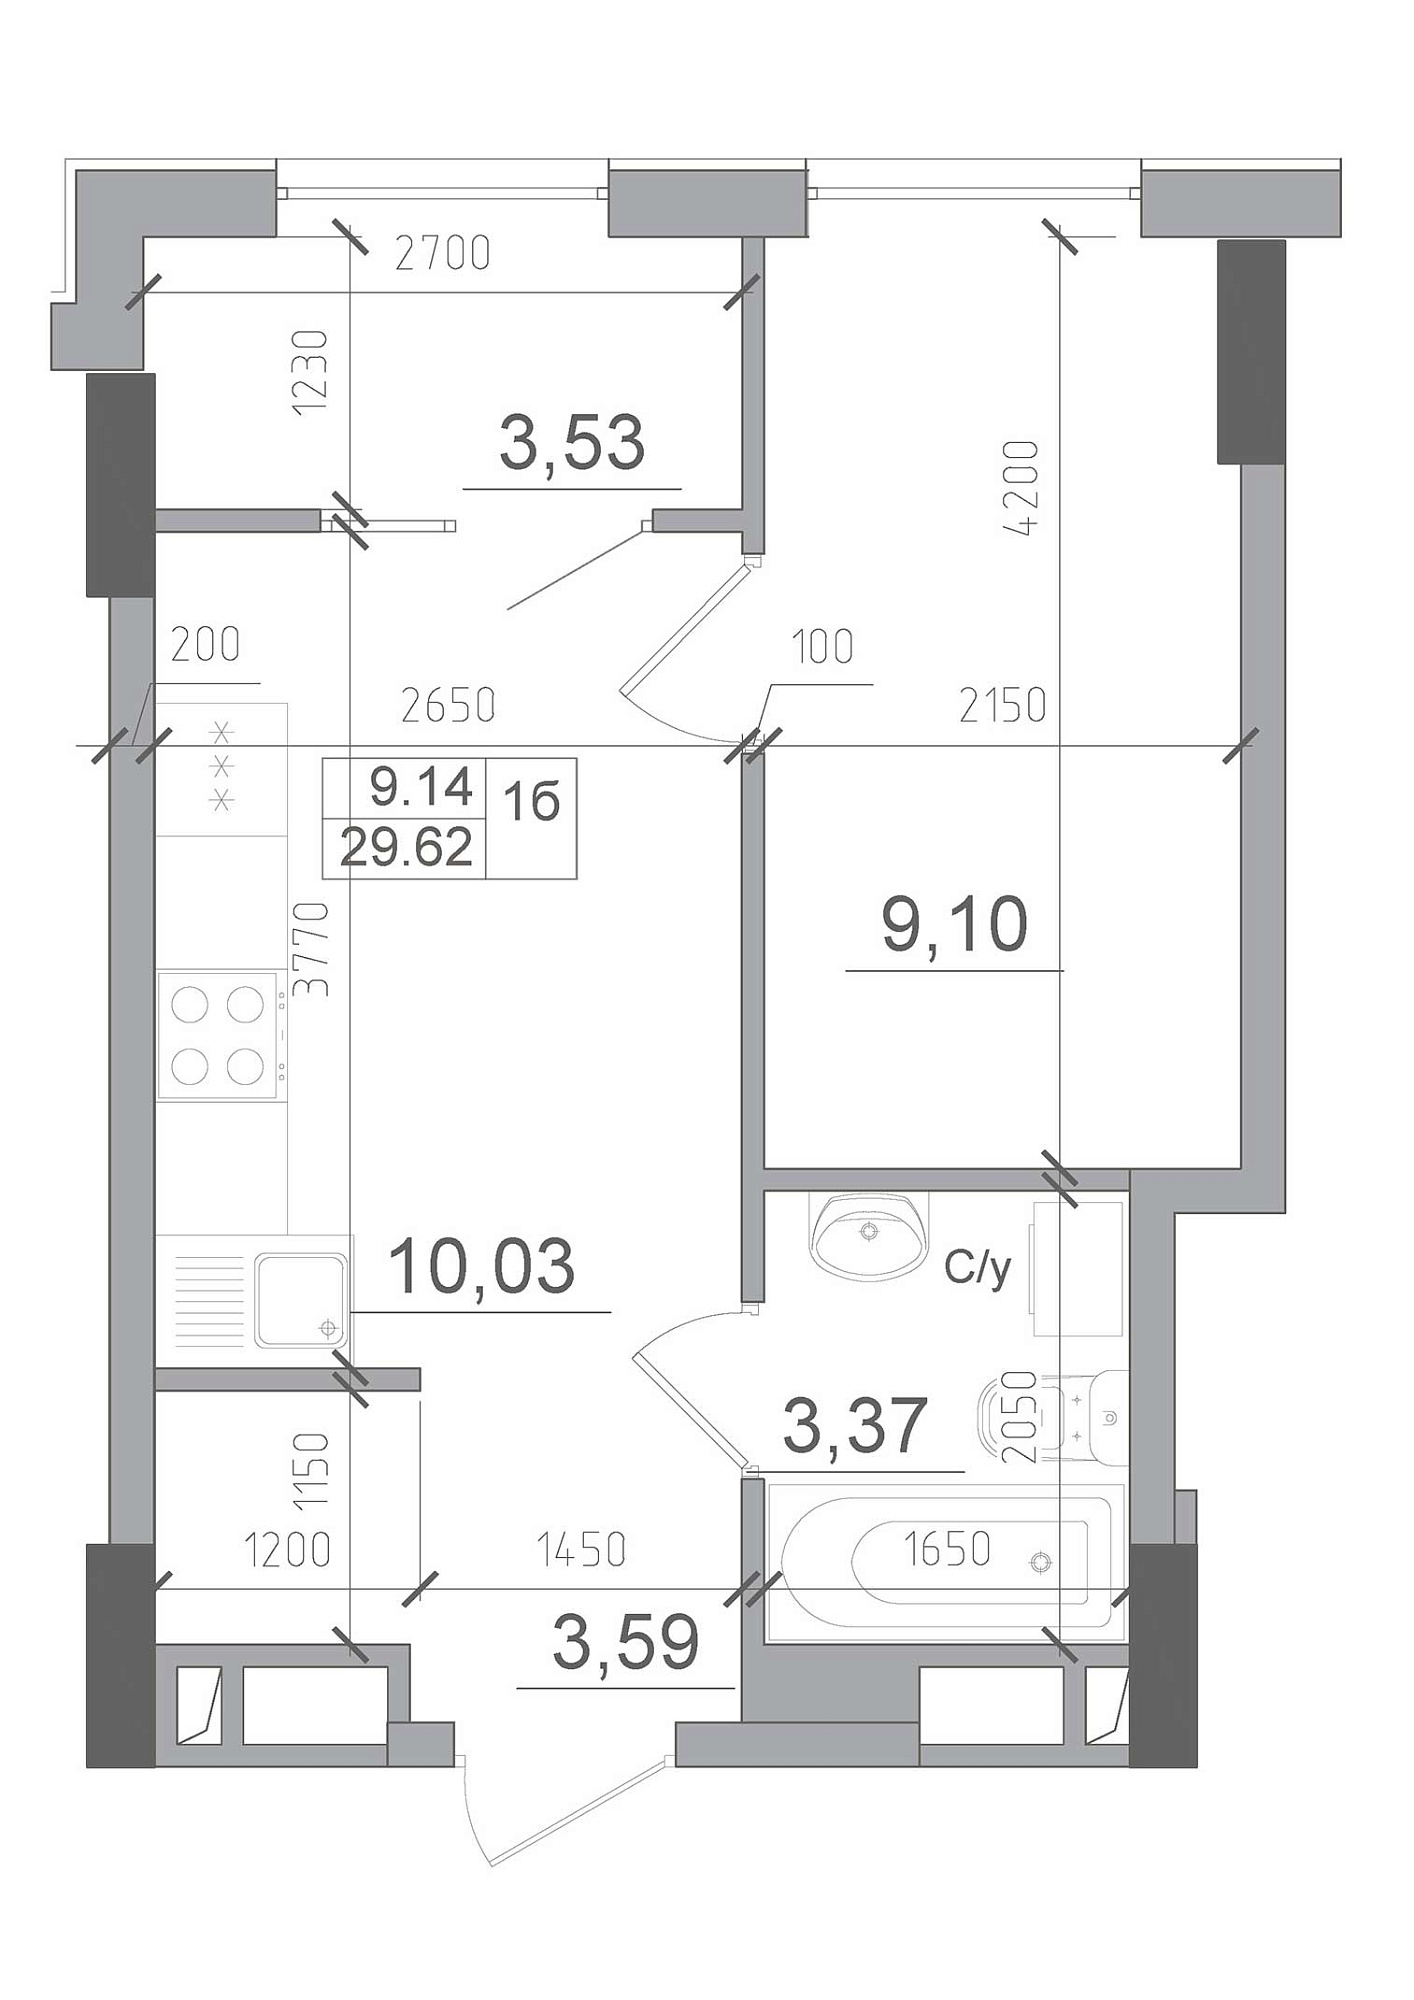 Планування 1-к квартира площею 29.62м2, AB-22-12/00002.